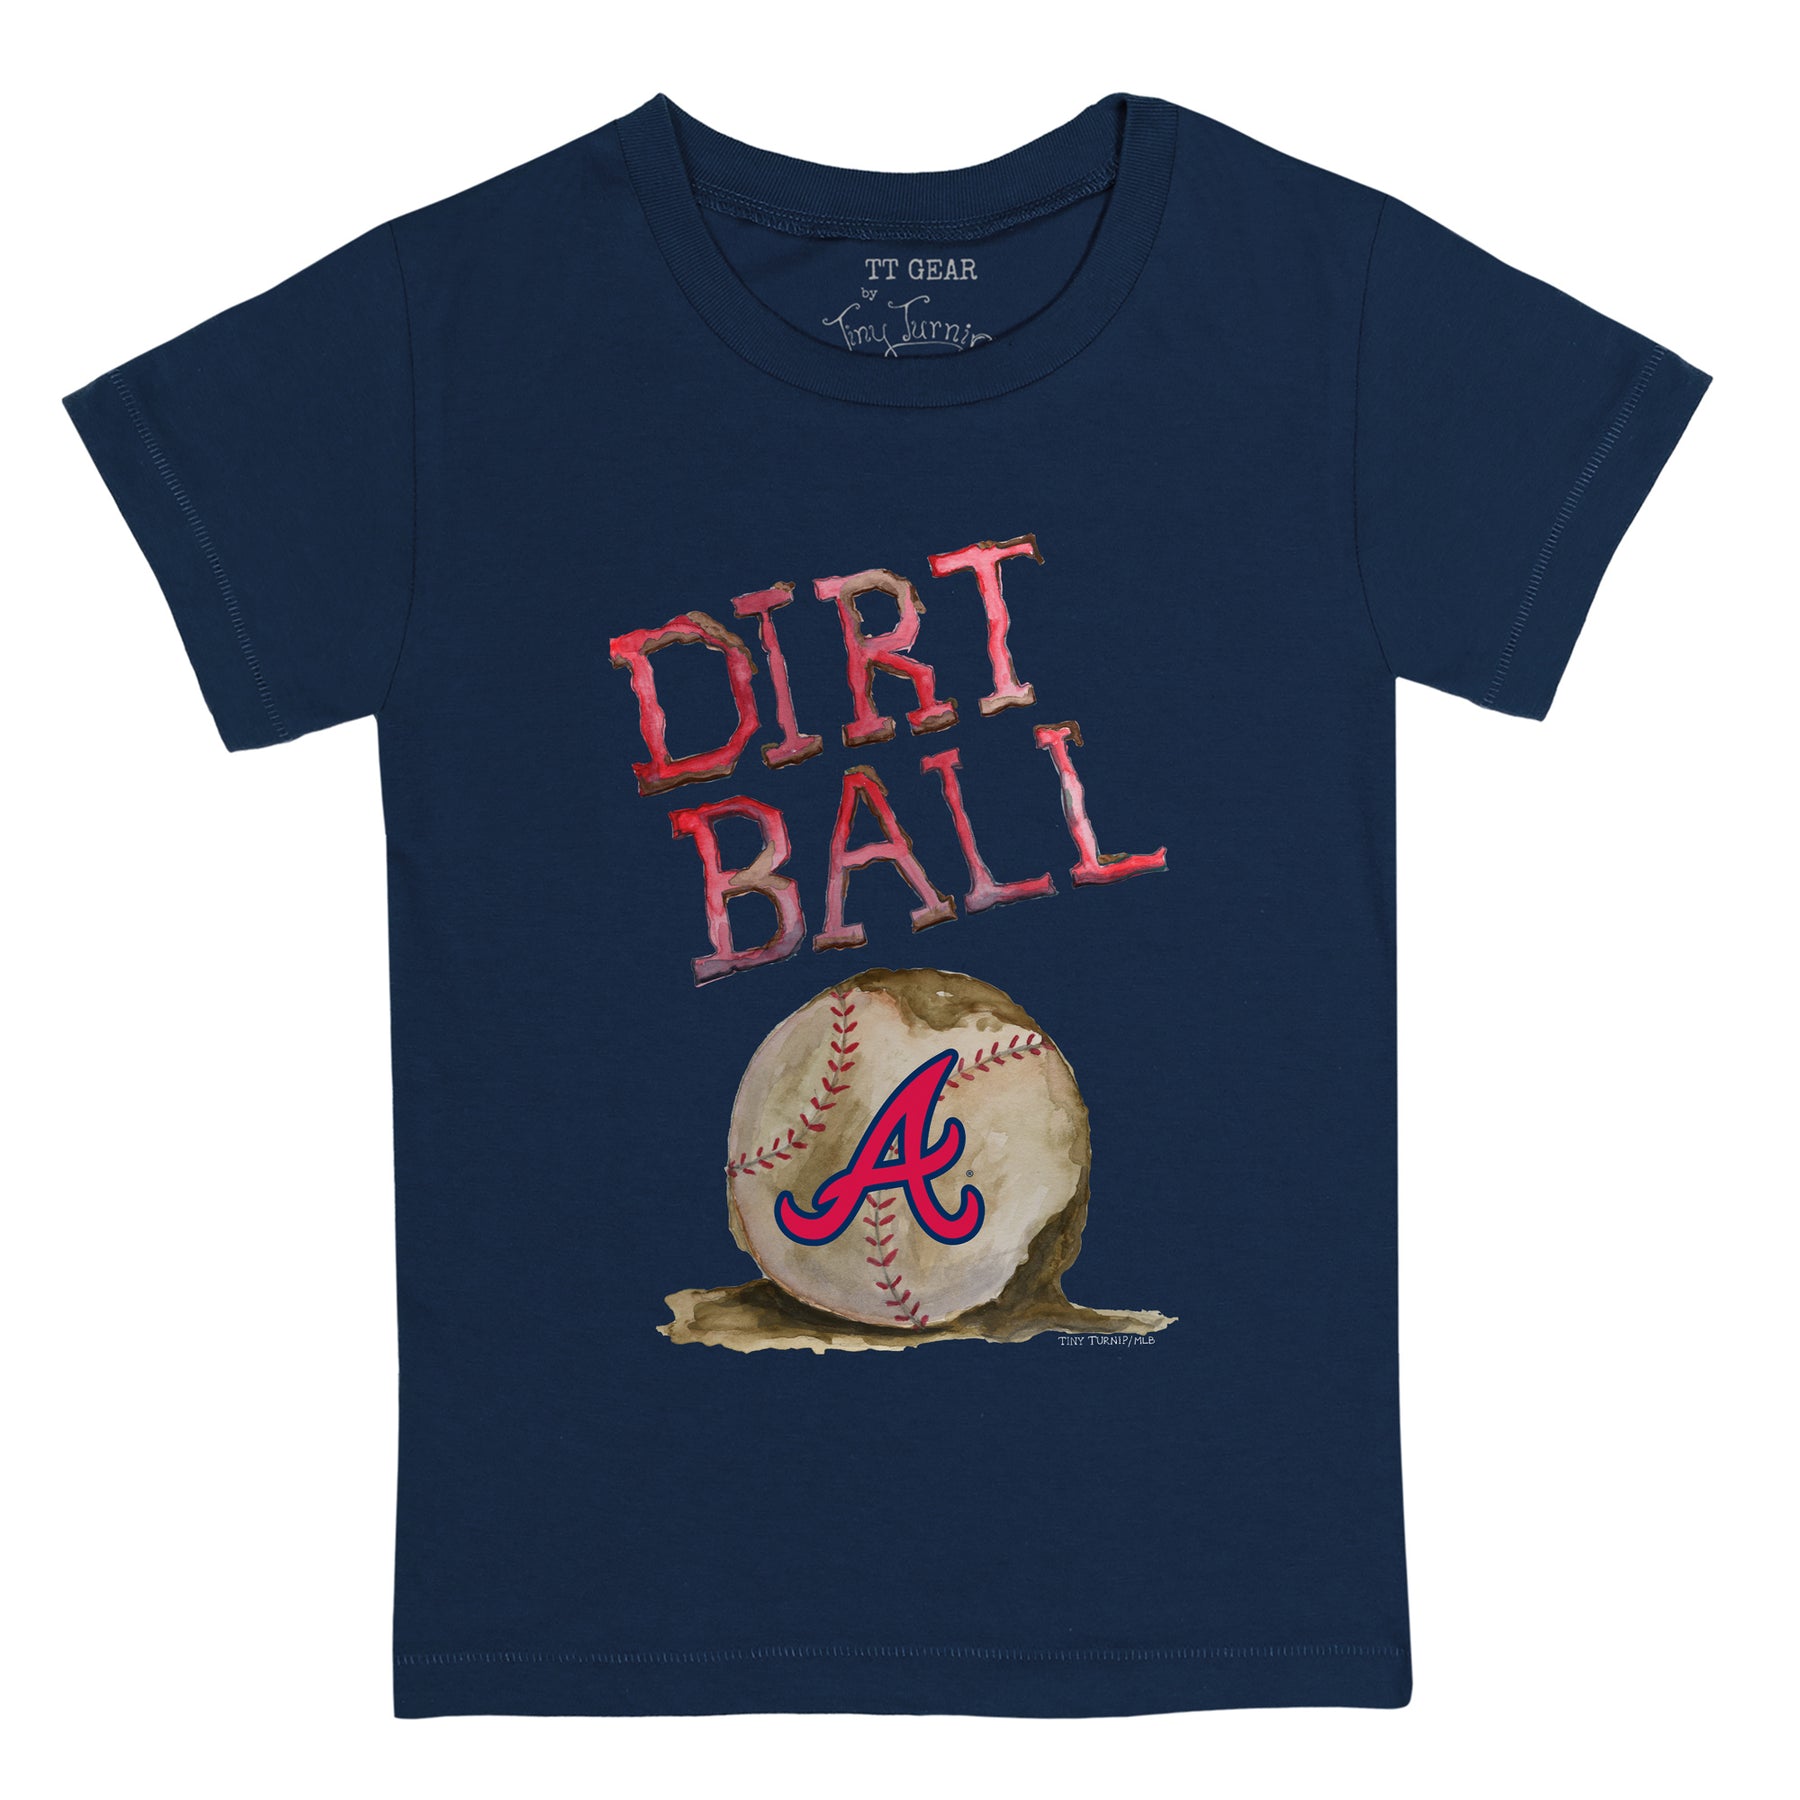 Atlanta Braves Baseball Bow Tee Shirt Youth Small (6-8) / White